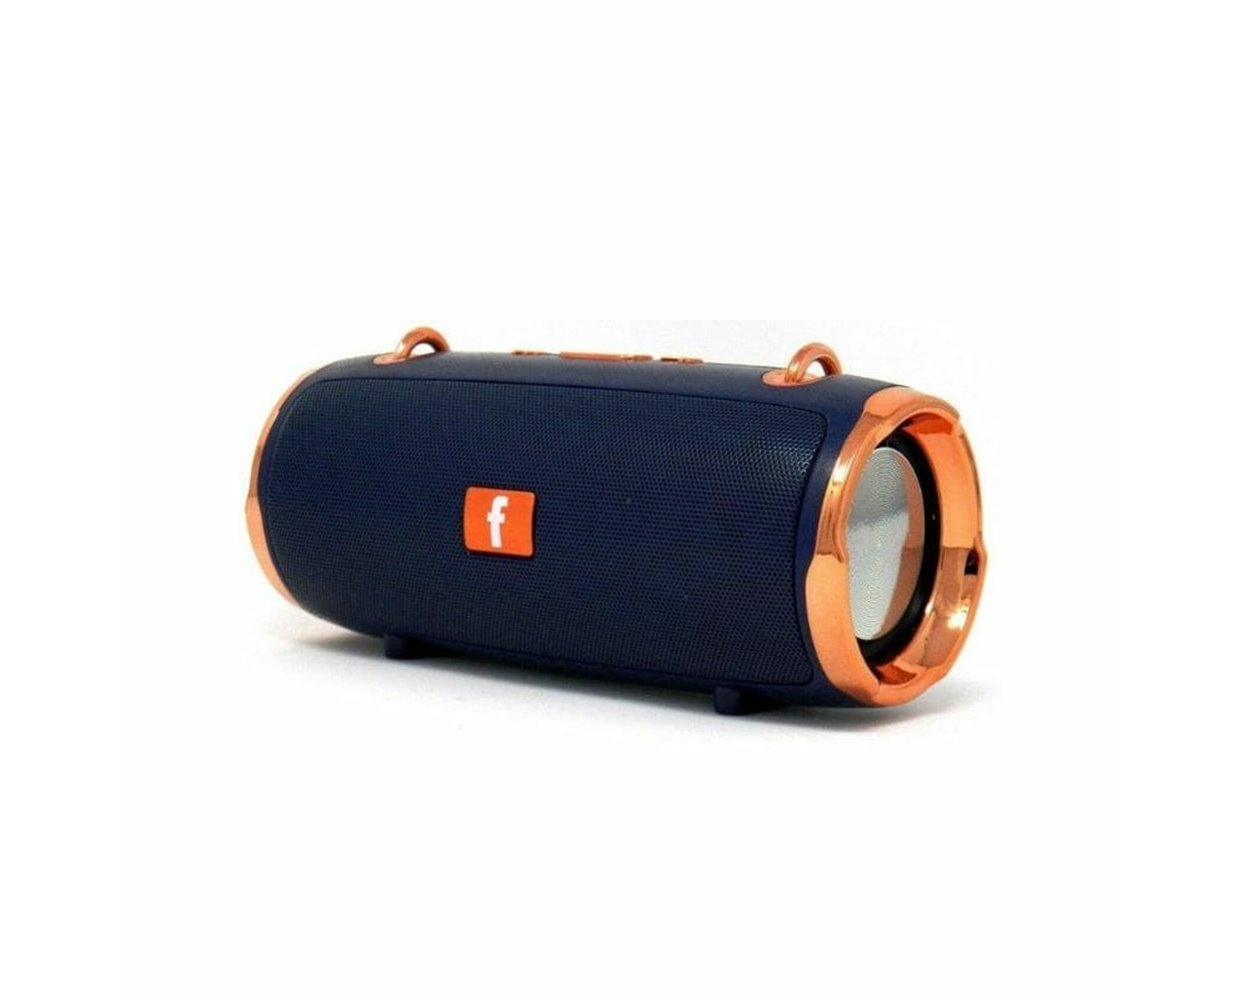 Ασύρματο ηχείο Bluetooth – KMS-Ε61 – 217337 - Blue